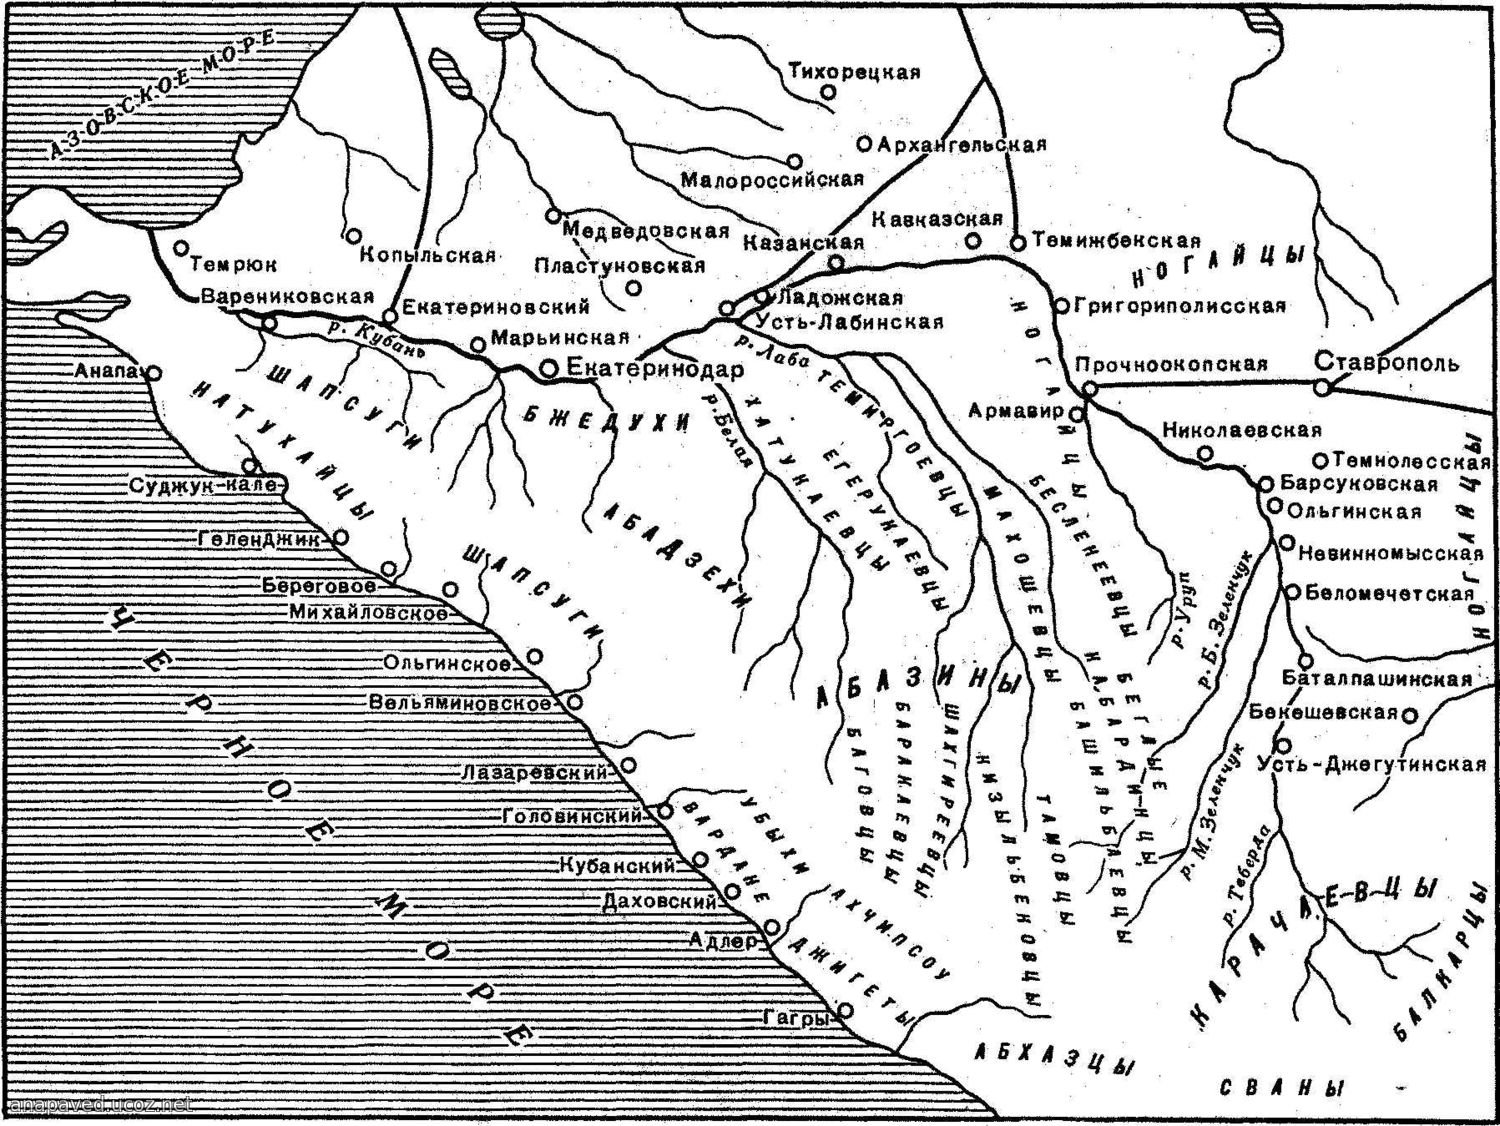 Народ западного кавказа. Черкесы карта 19 век. Карта Черноморского побережья 19 века. Карта Черкесии 19 века.